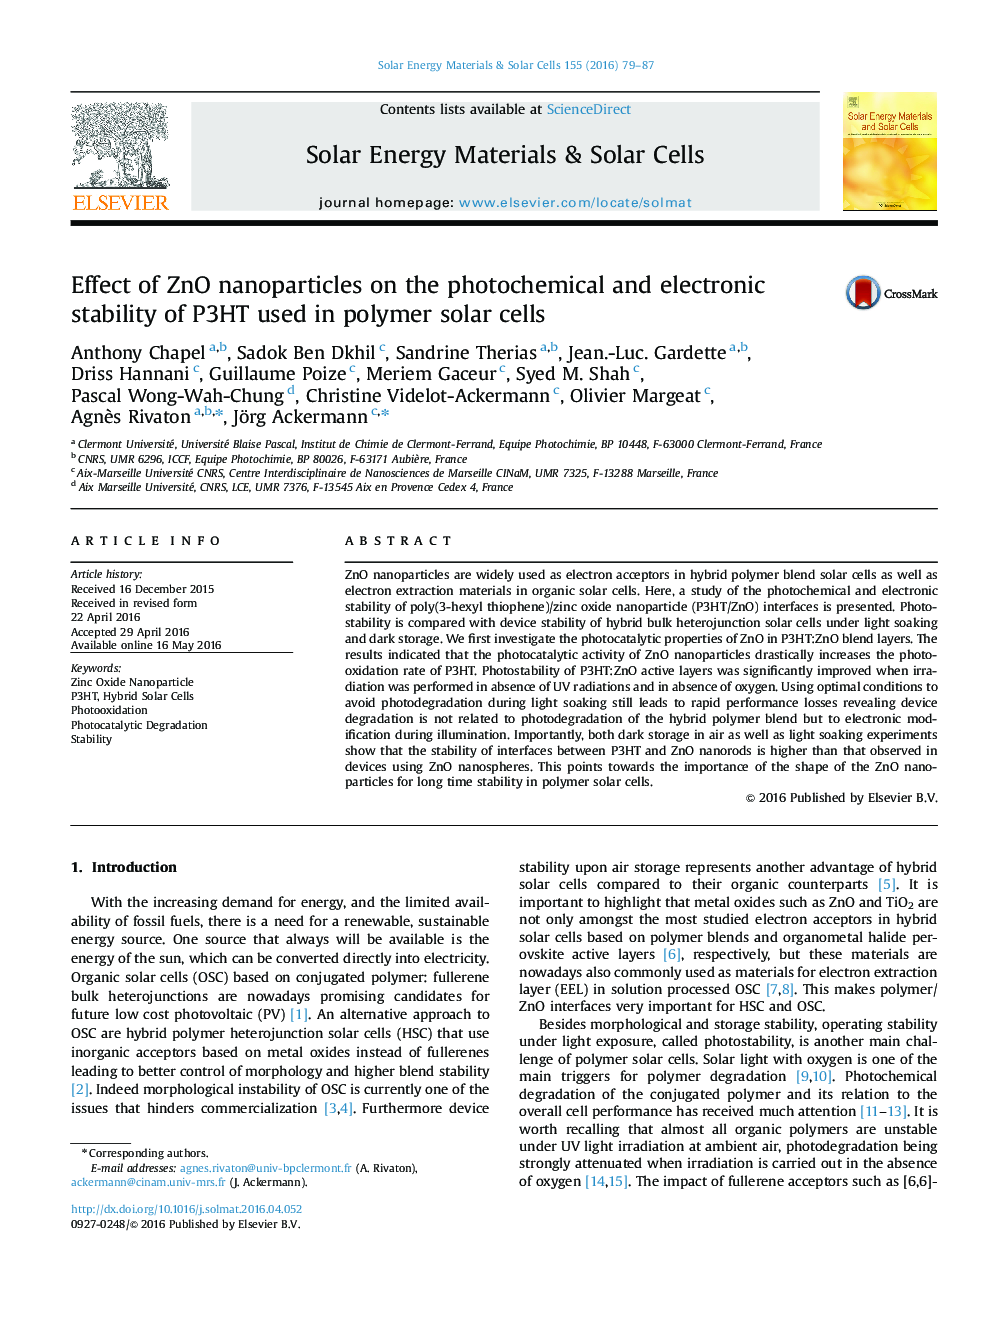 اثر نانوذرات ZnO بر ثبات فتوشیمیایی و الکترونیکی در P3HT مورد استفاده در سلول های خورشیدی پلیمری